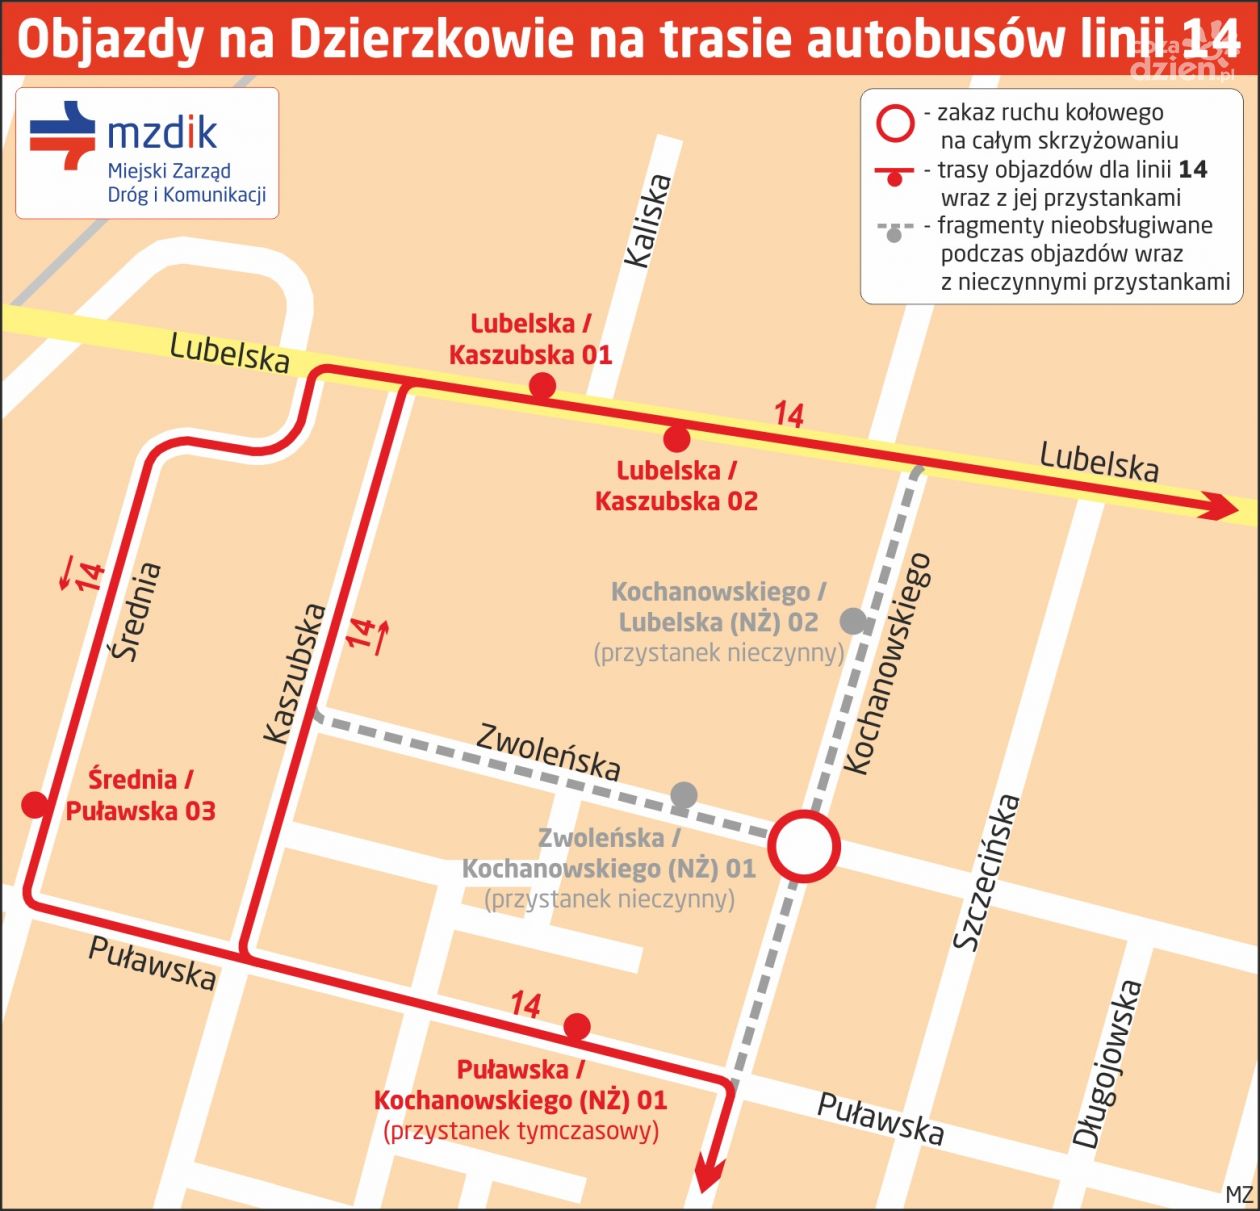 Zmiany w ruchu na Dzierzkowie i objazdy dla linii 14